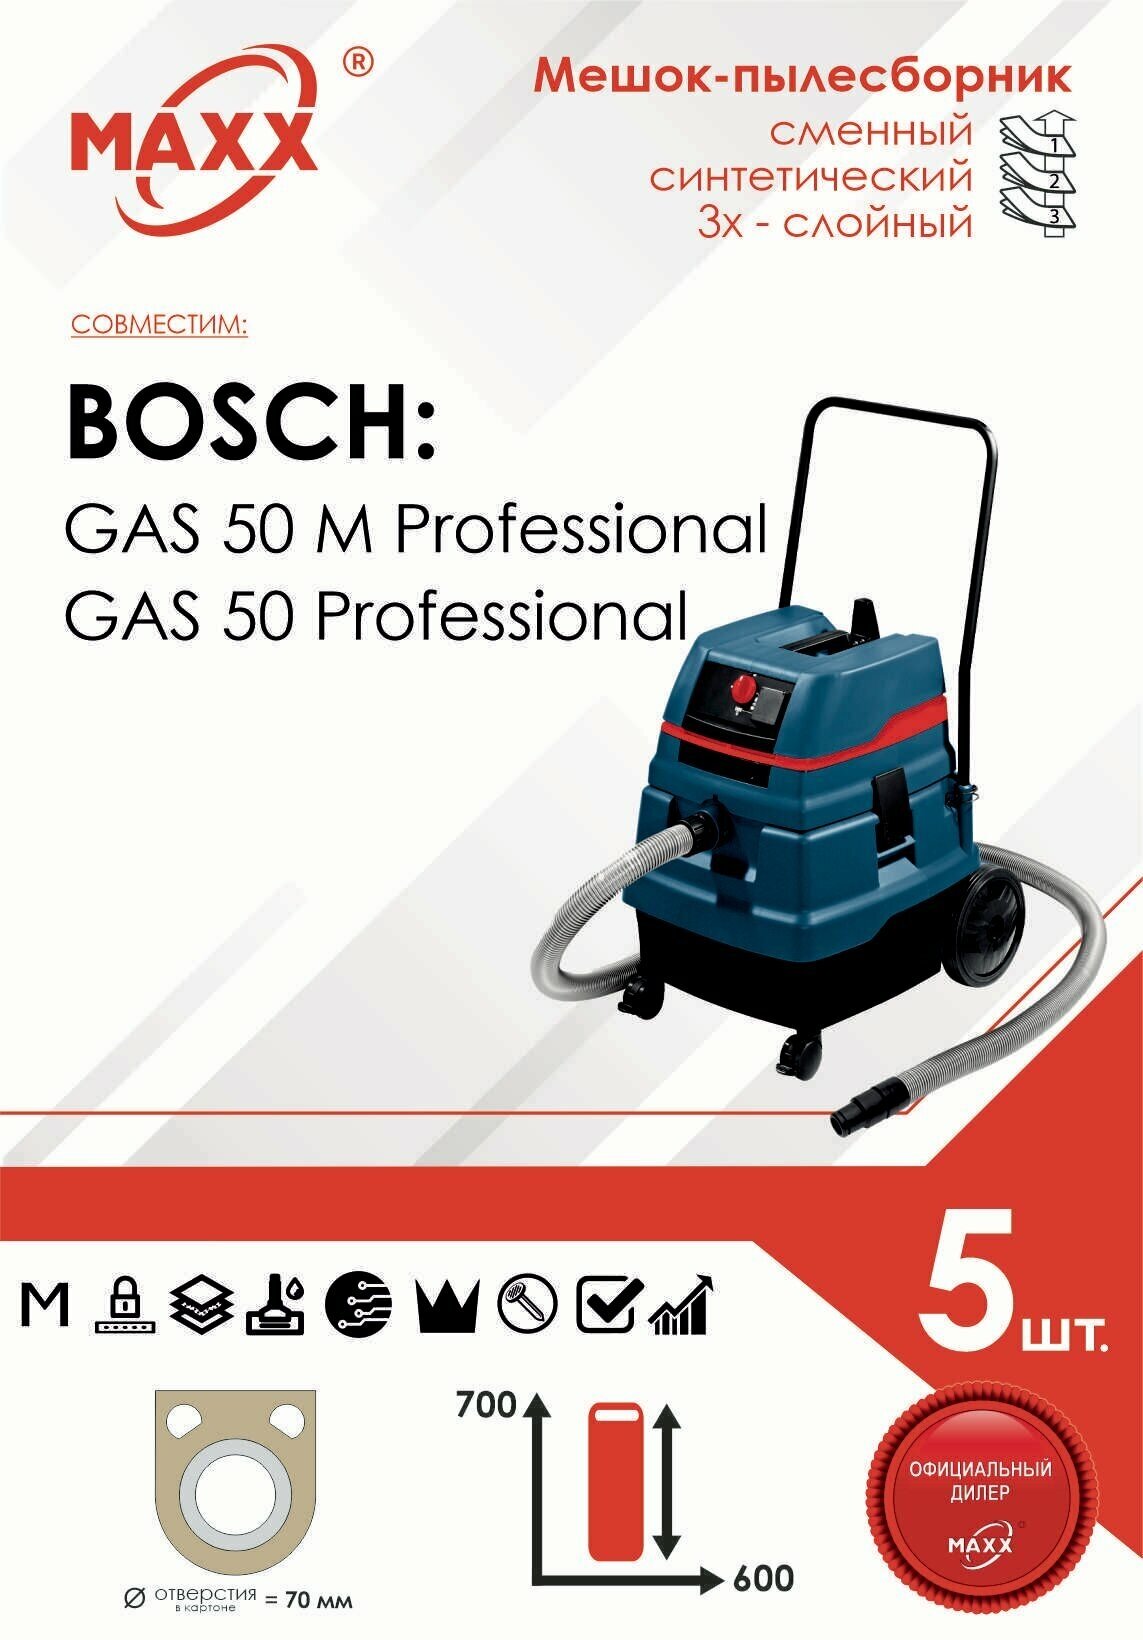 Мешок - пылесборник 5 шт. для пылесоса BOSCH GAS 50 Professional